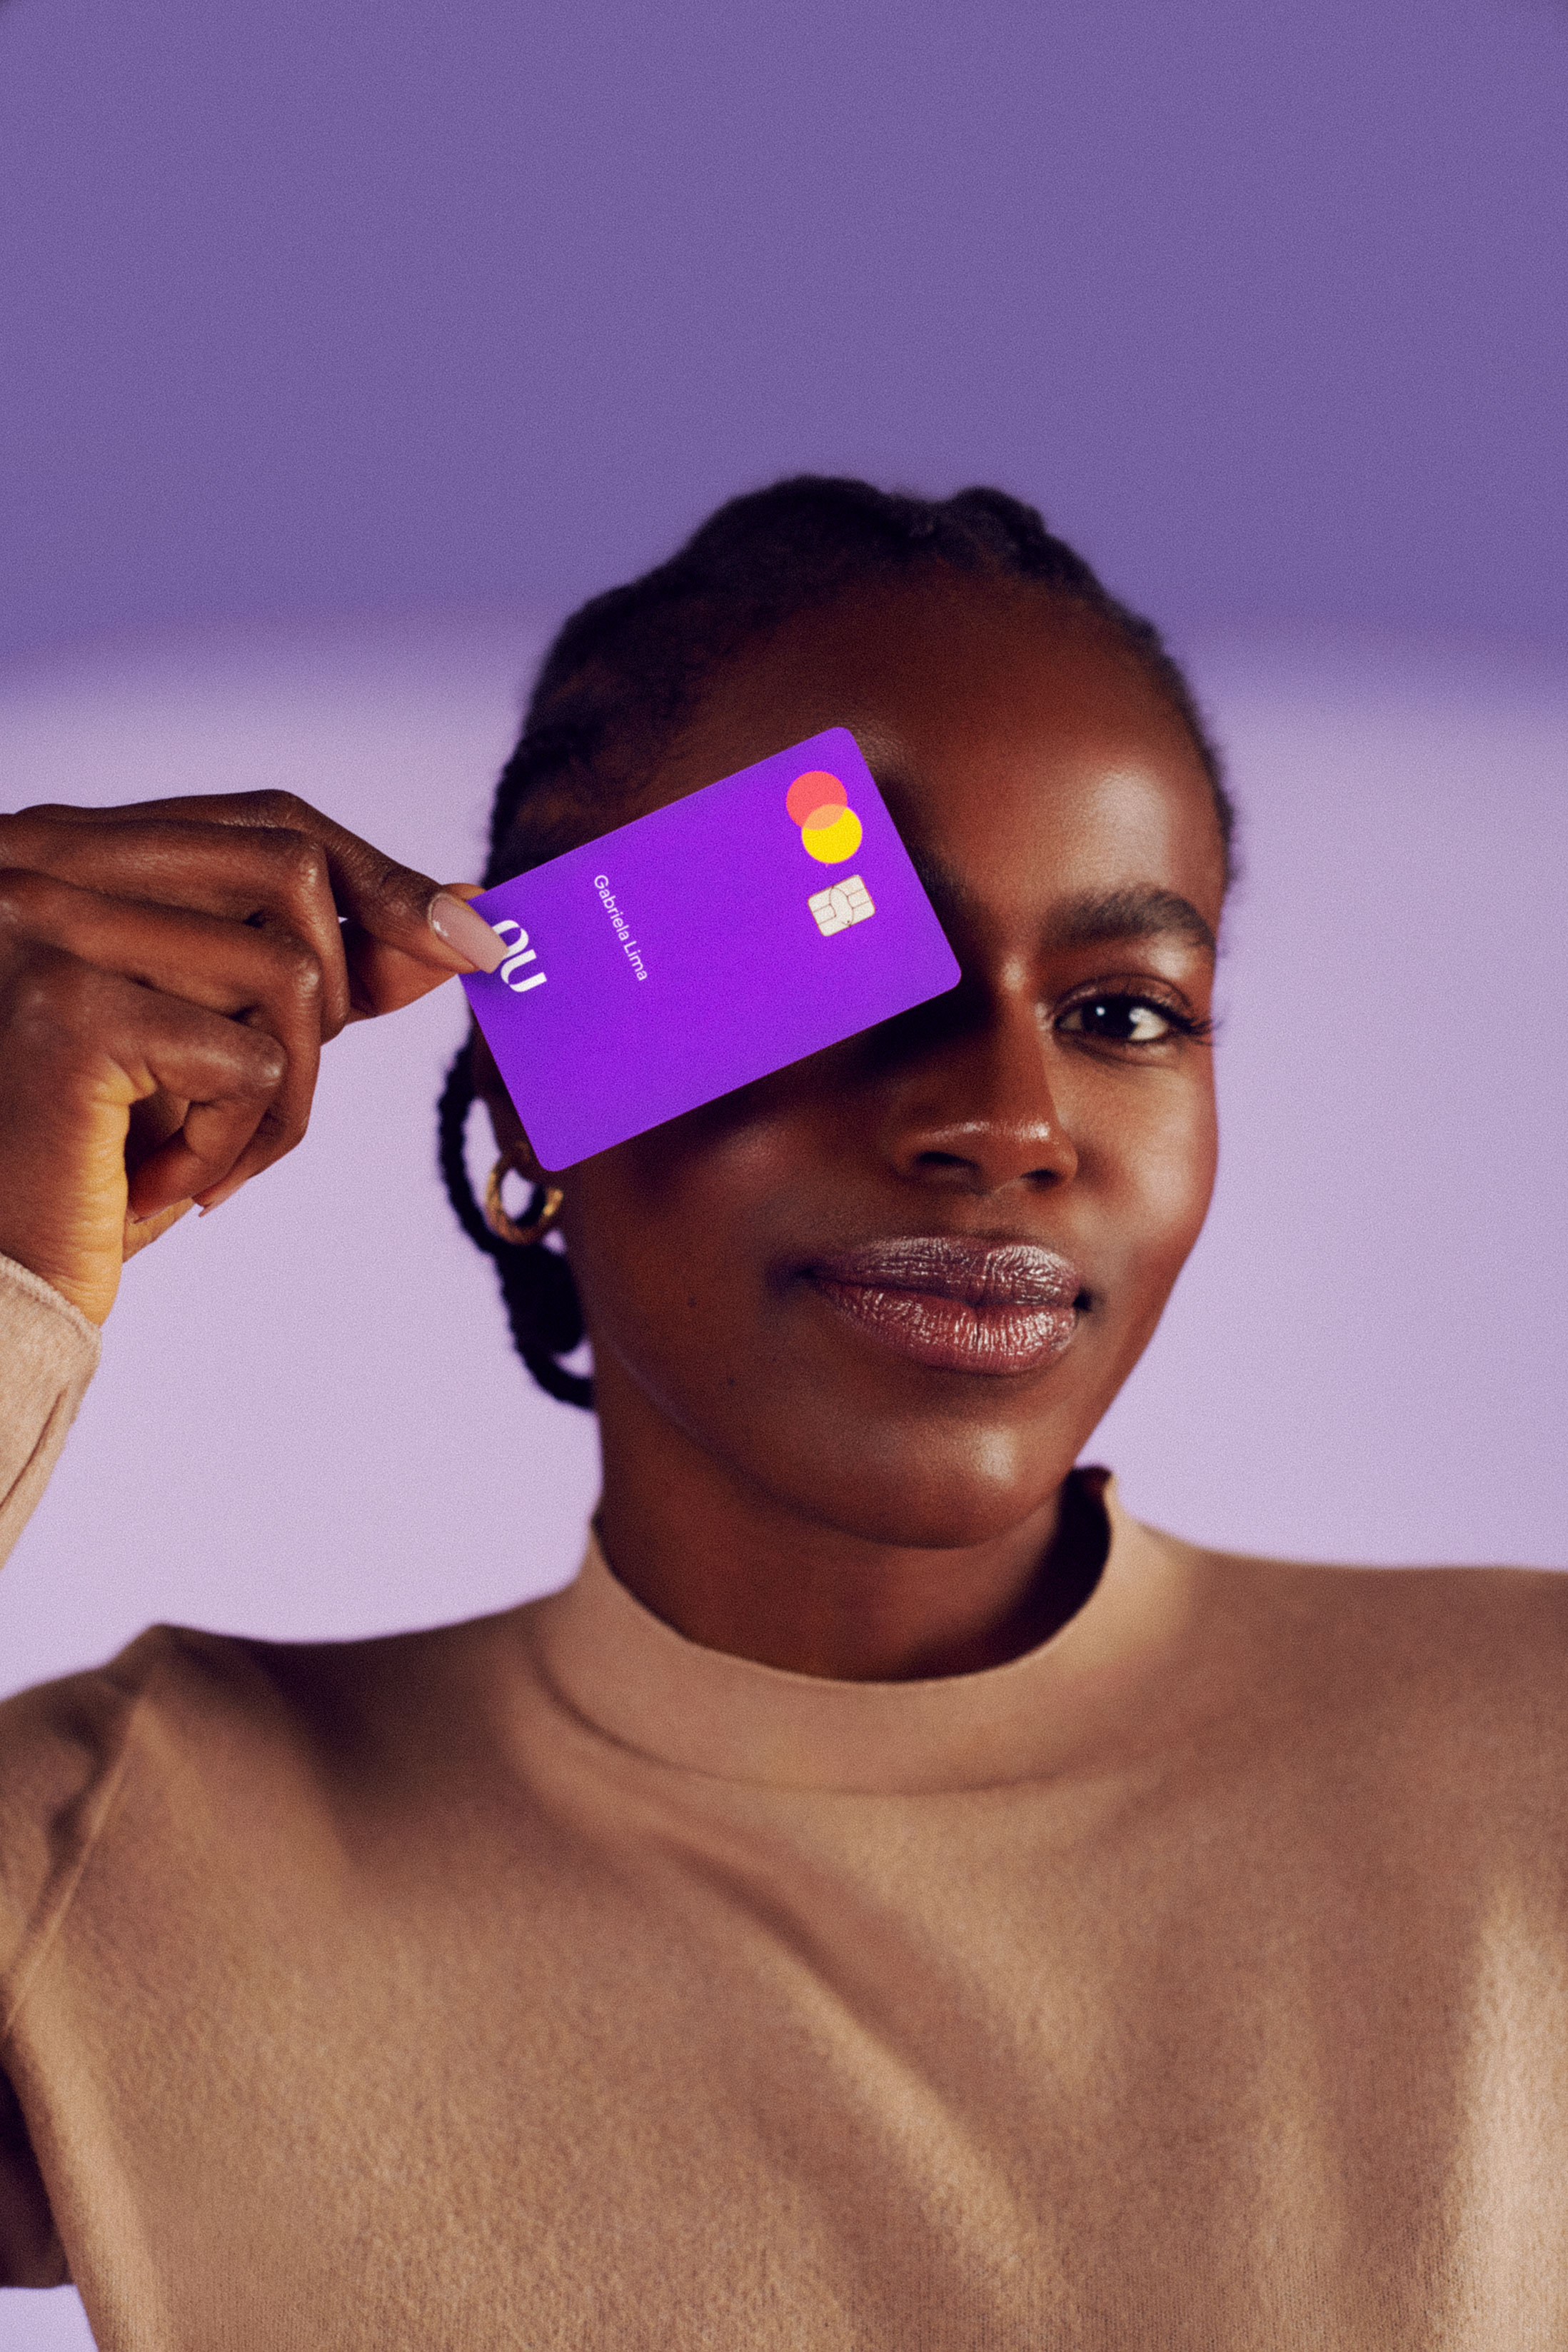 Cartões de crédito Porto Seguro Visa estão agora compatíveis com o Apple Pay!  - MacMagazine